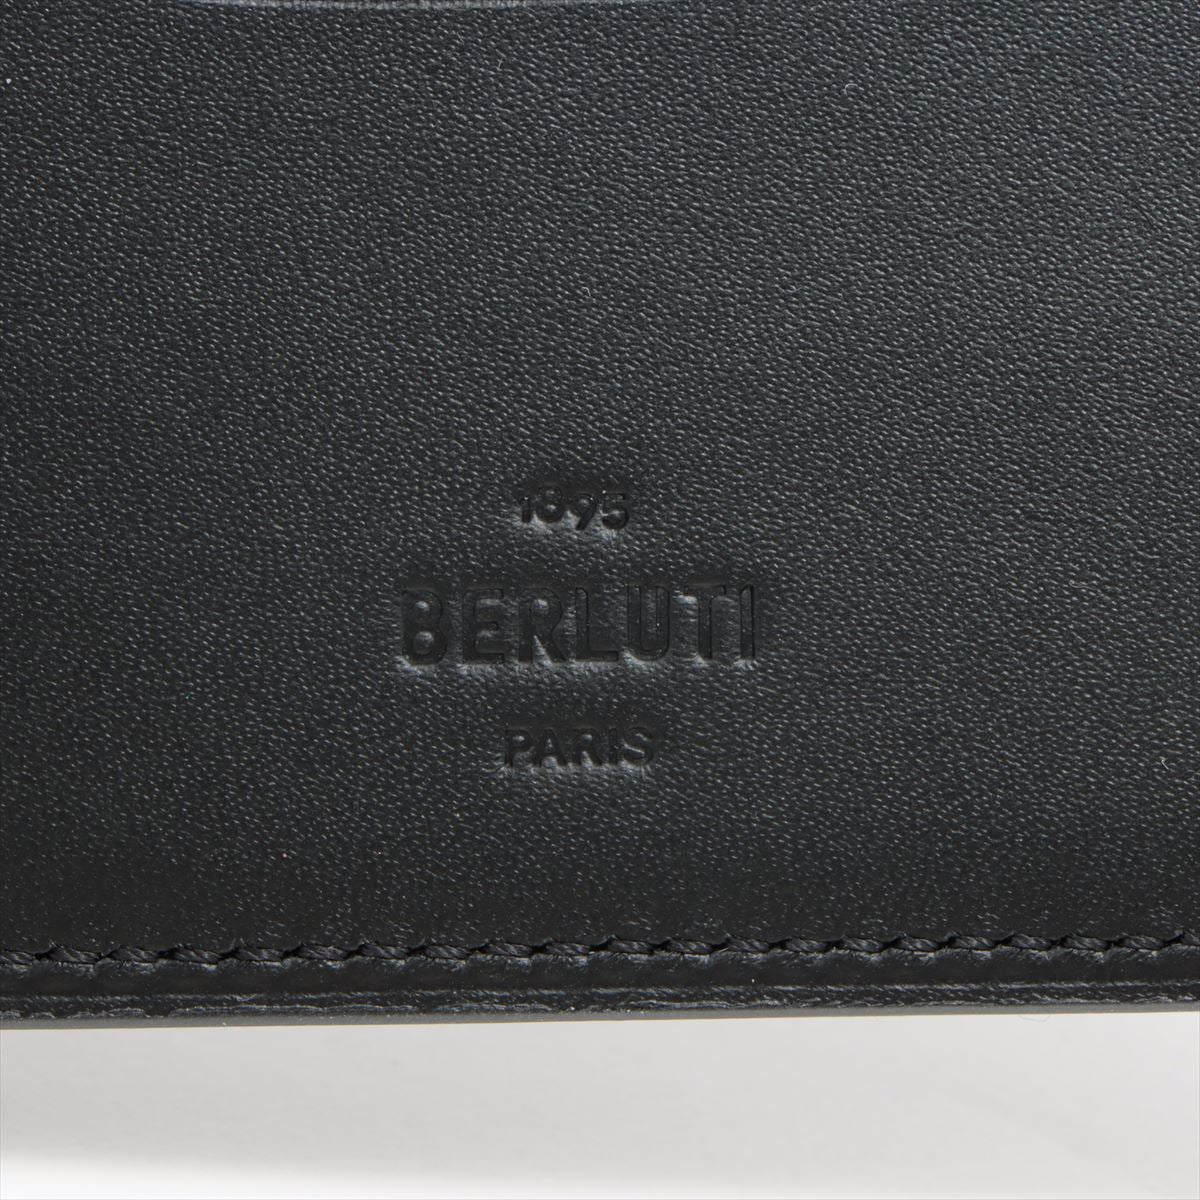 ベルルッティ カリグラフィ レザー 財布 ブラック